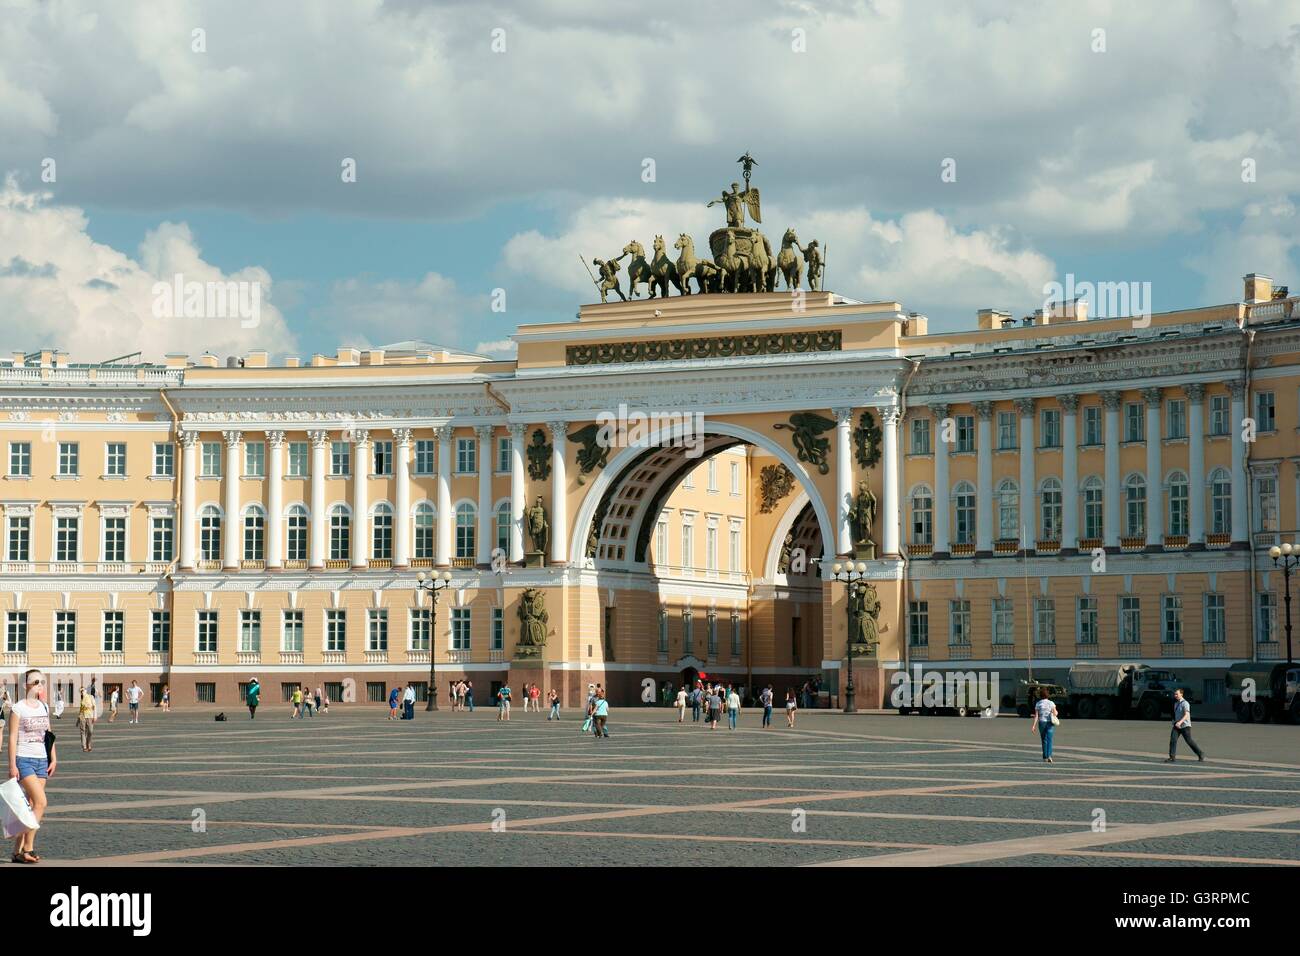 San Pietroburgo Russia. attraverso la piazza del palazzo a doppia arcata del generale dello staff edificio sormontato dal carro della vittoria alata Foto Stock